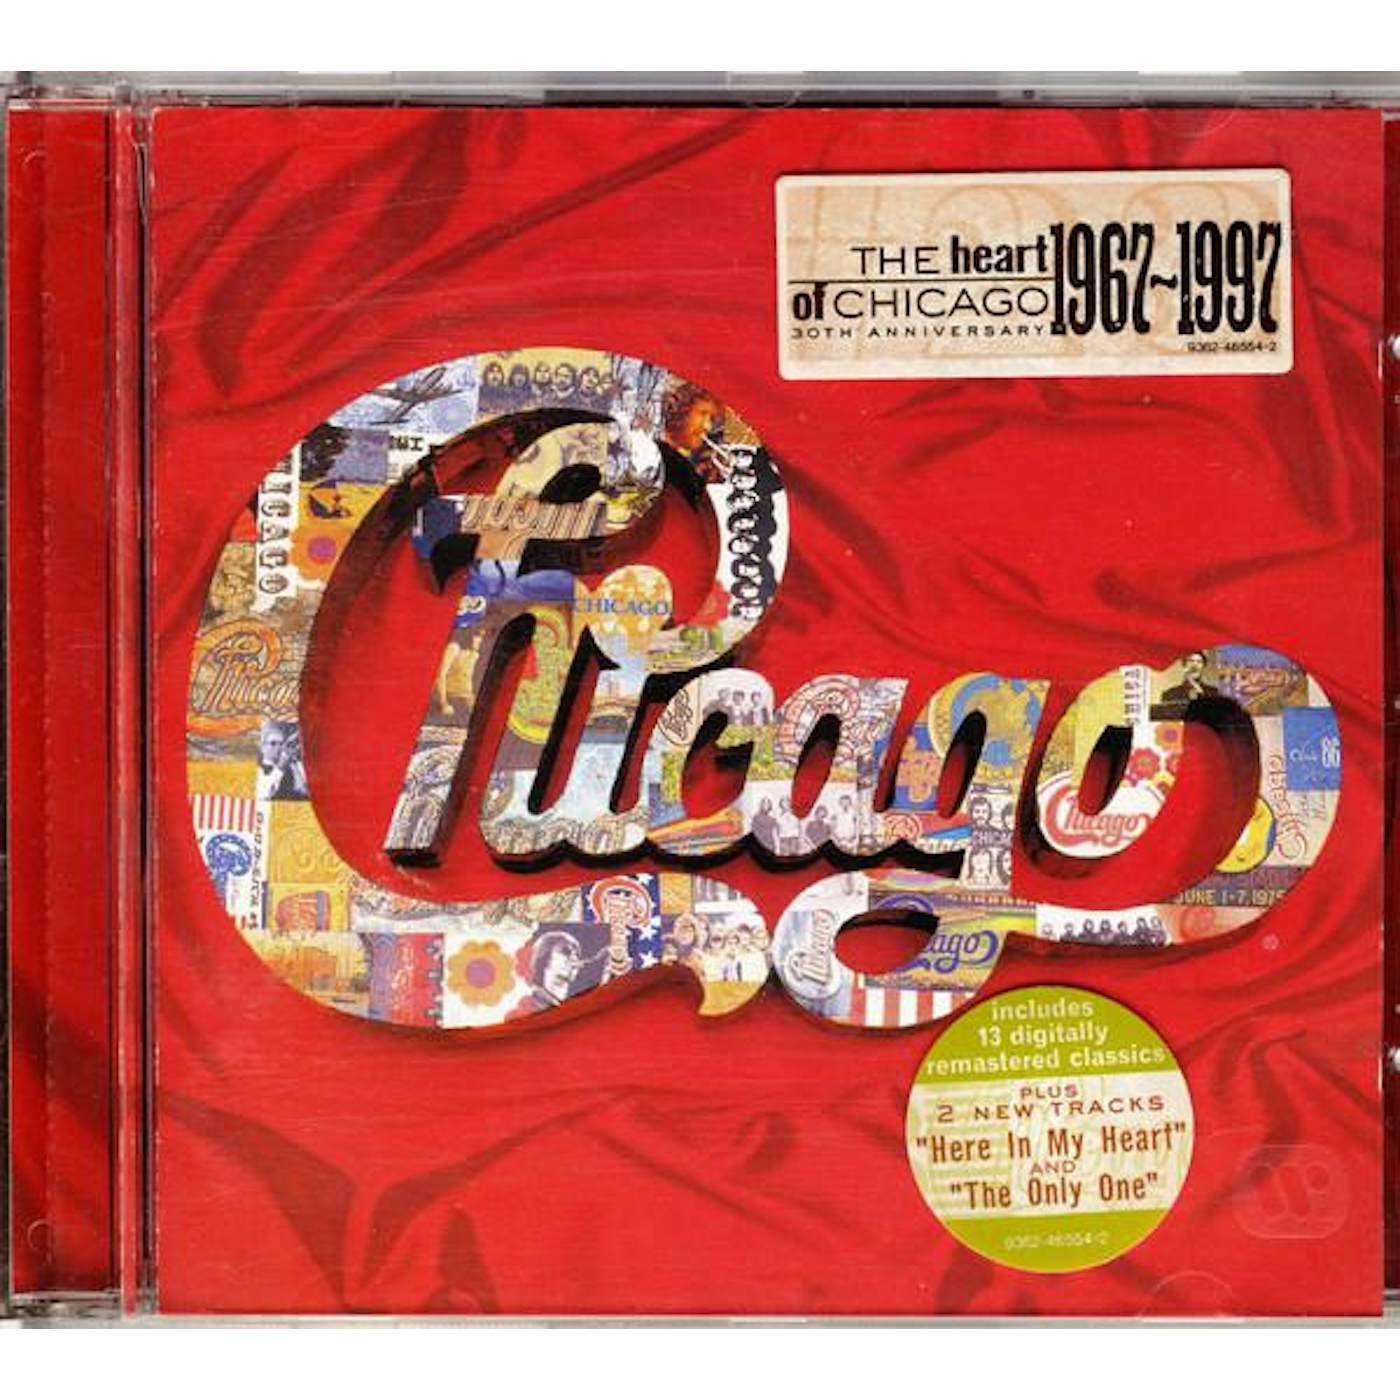 HEART OF CHICAGO CD